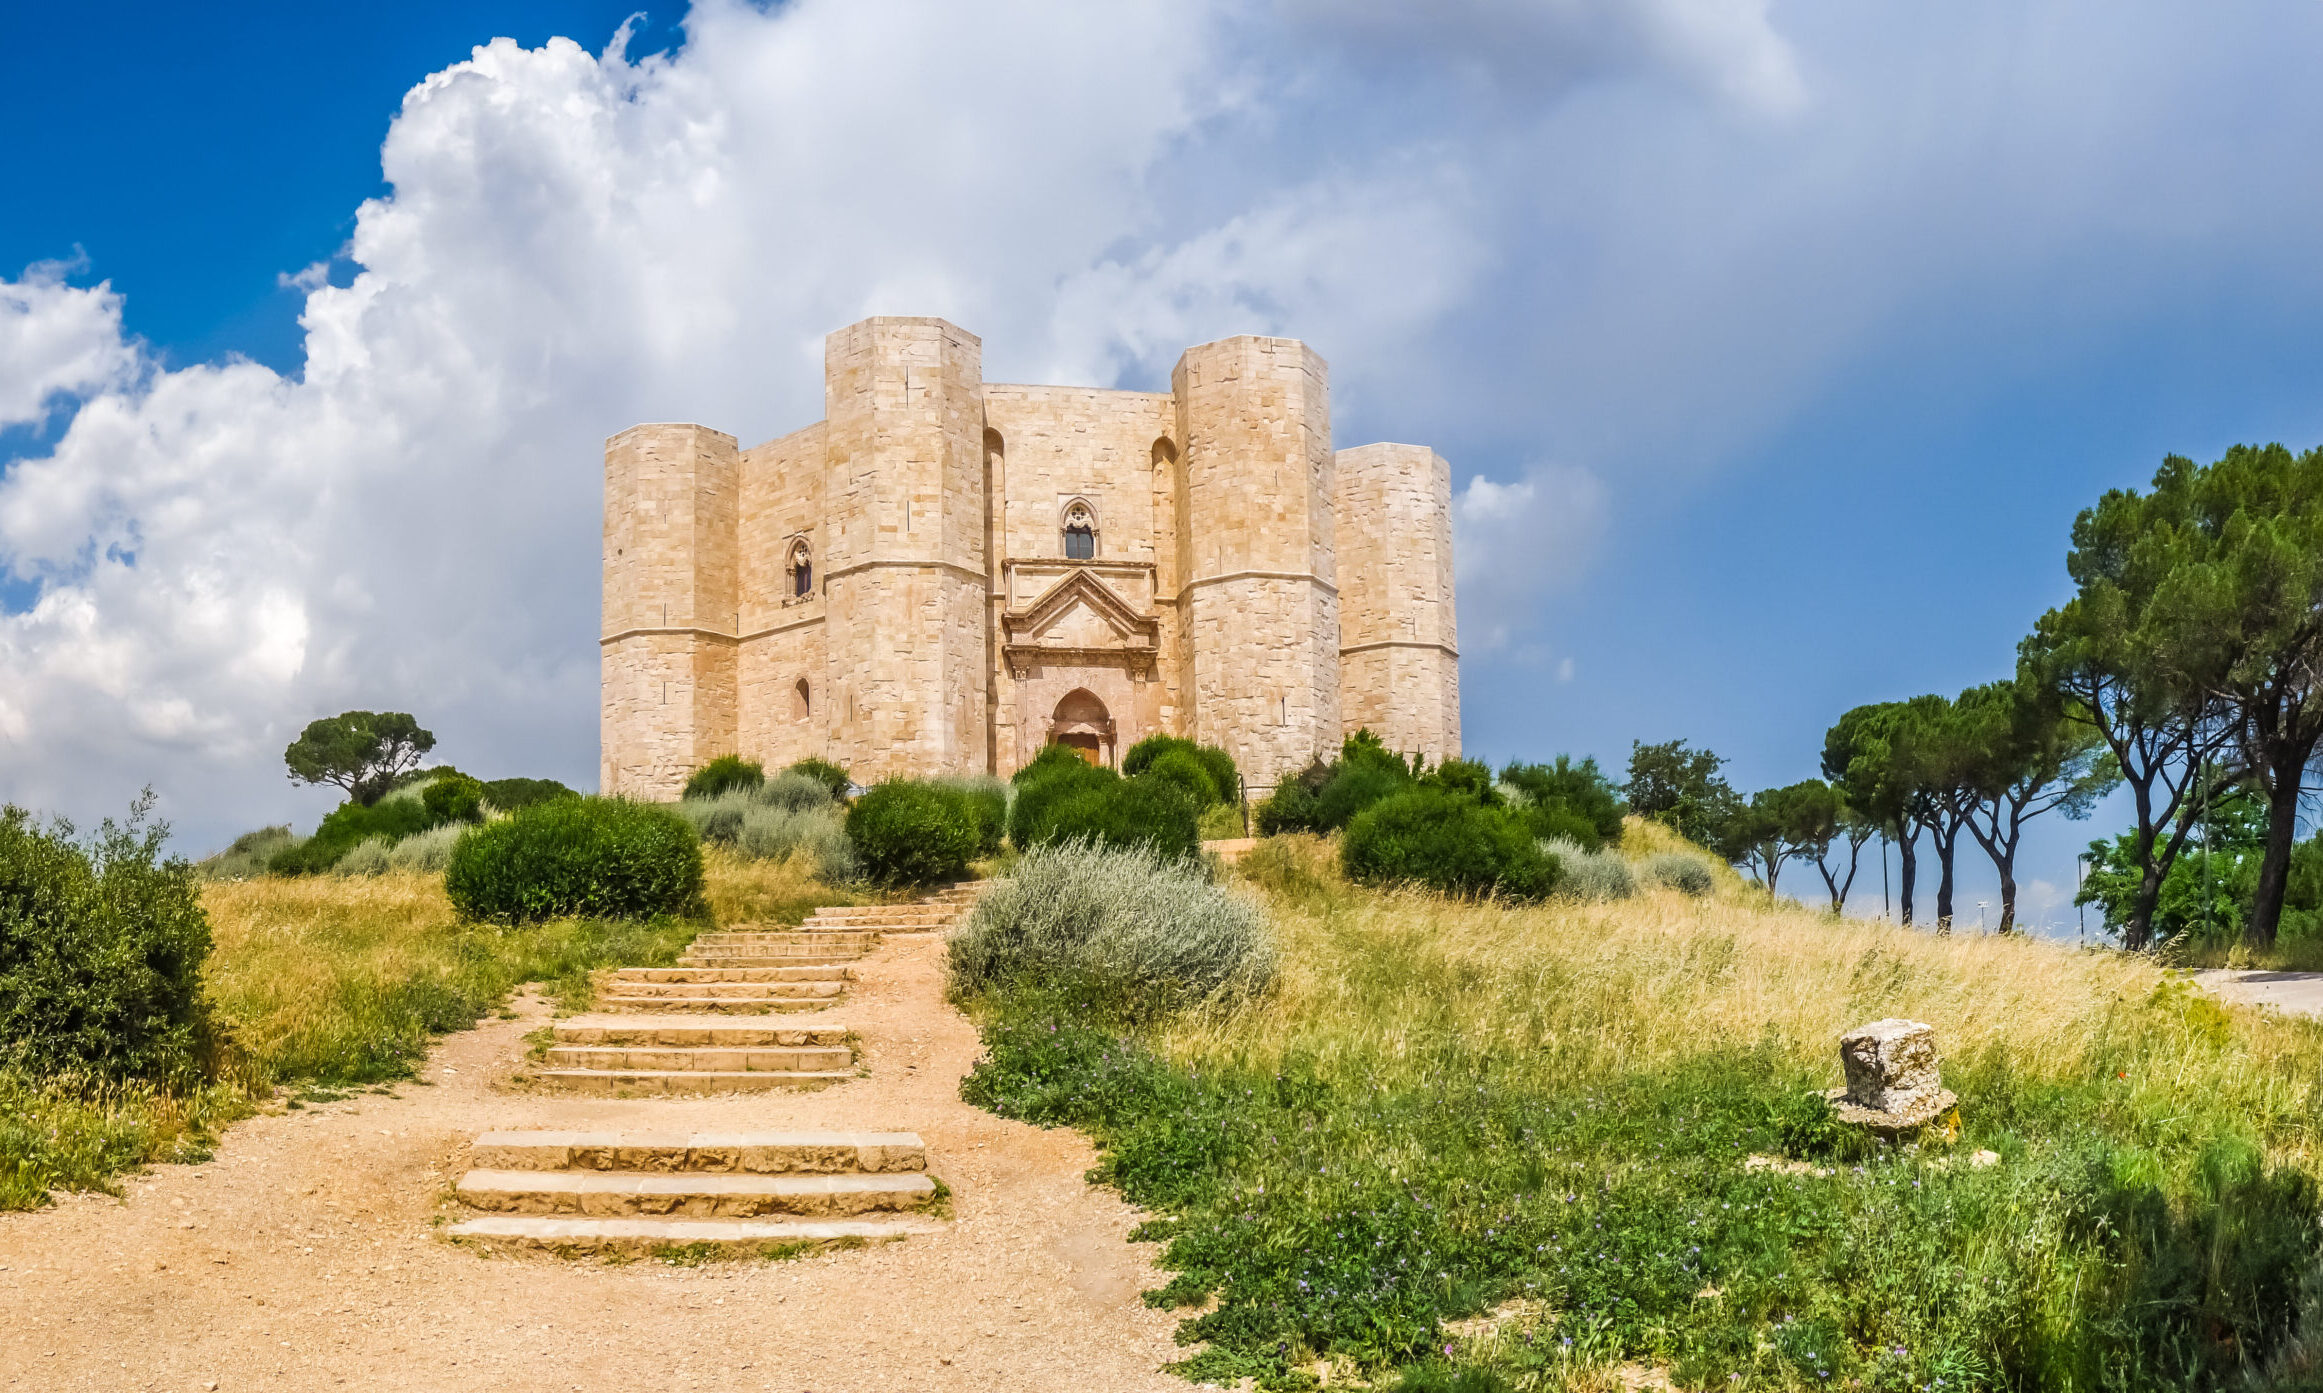 Castel del Monte, Apulia: An octagonal 13th-century castle built by Emperor Frederick II.